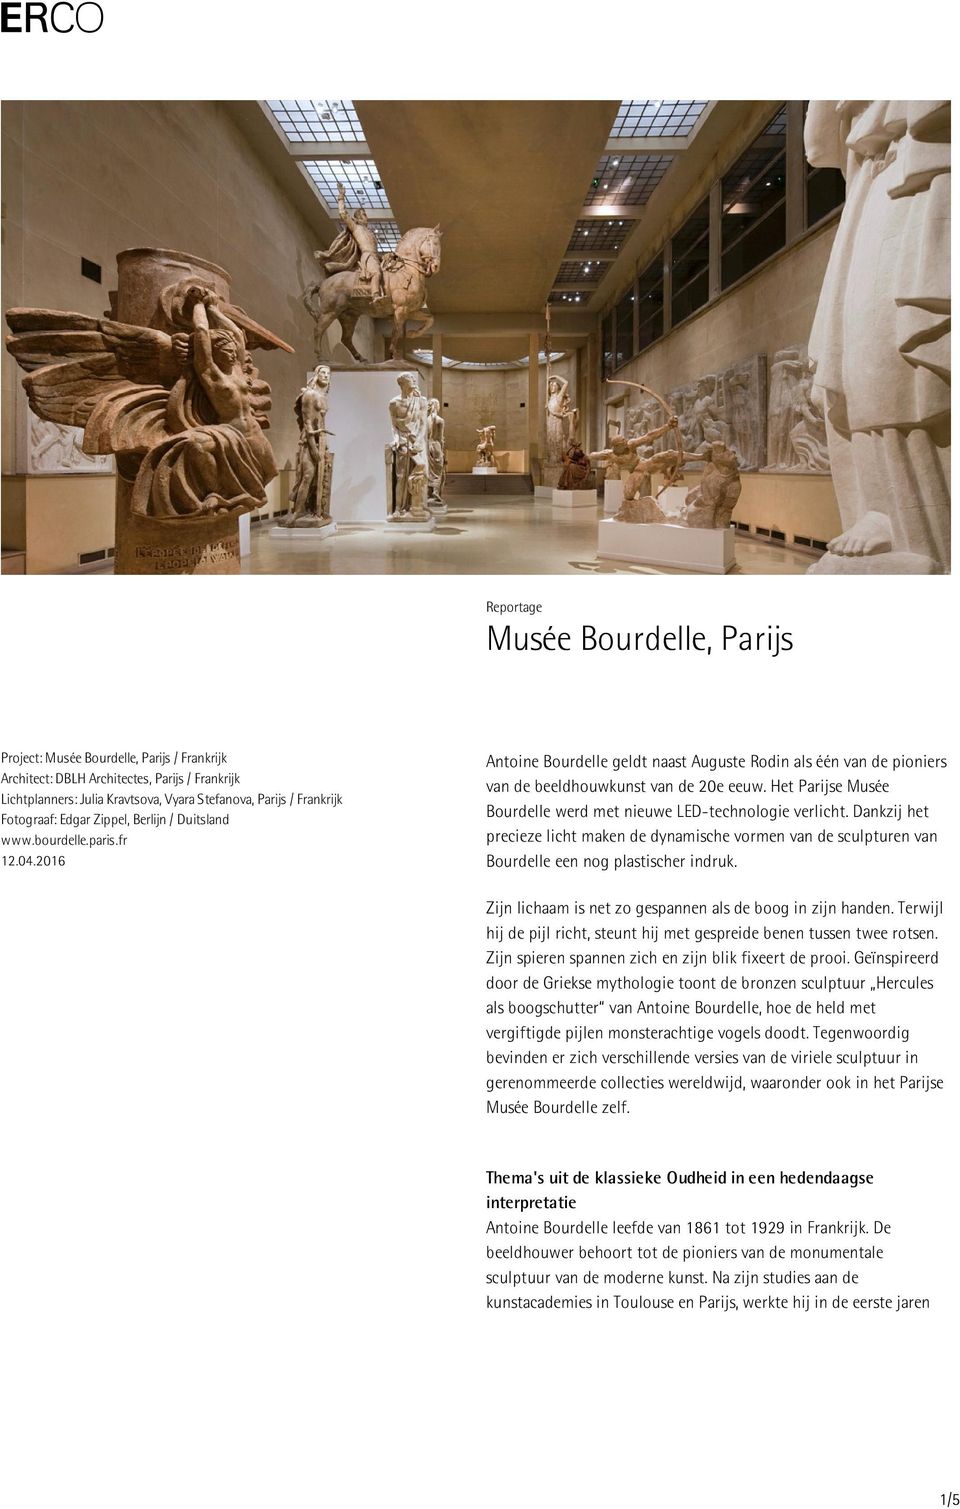 Het Parijse Musée Bourdelle werd met nieuwe LED-technologie verlicht. Dankzij het precieze licht maken de dynamische vormen van de sculpturen van Bourdelle een nog plastischer indruk.